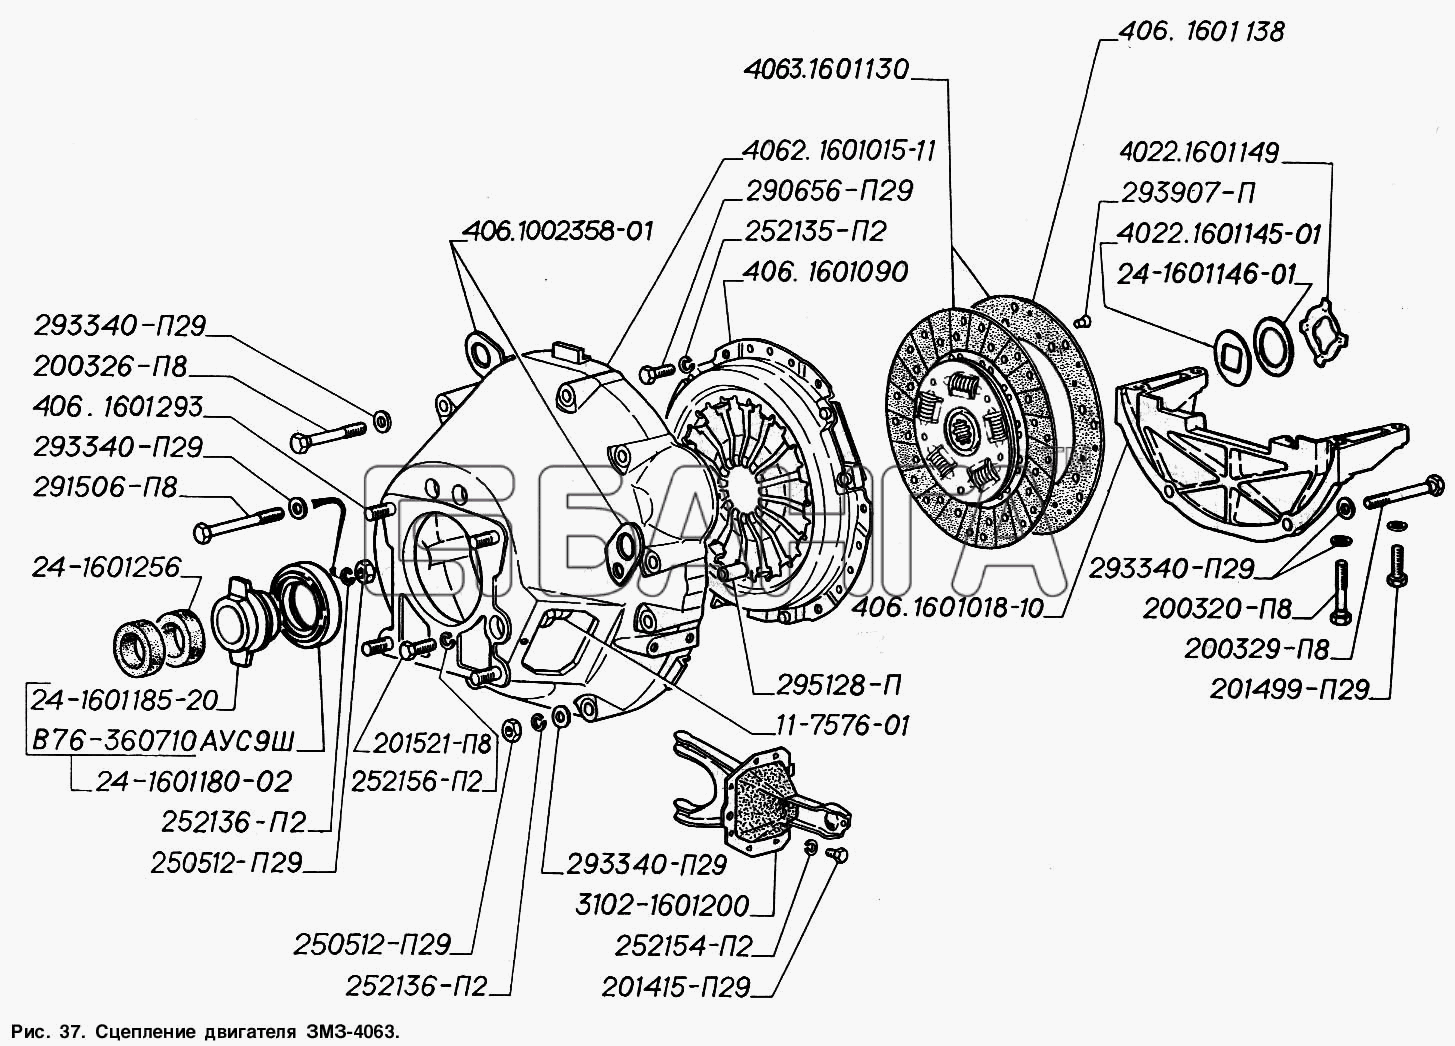 ГАЗ ГАЗ-2217 (Соболь) Схема Сцепление двигателя ЗМЗ-4063-101 banga.ua